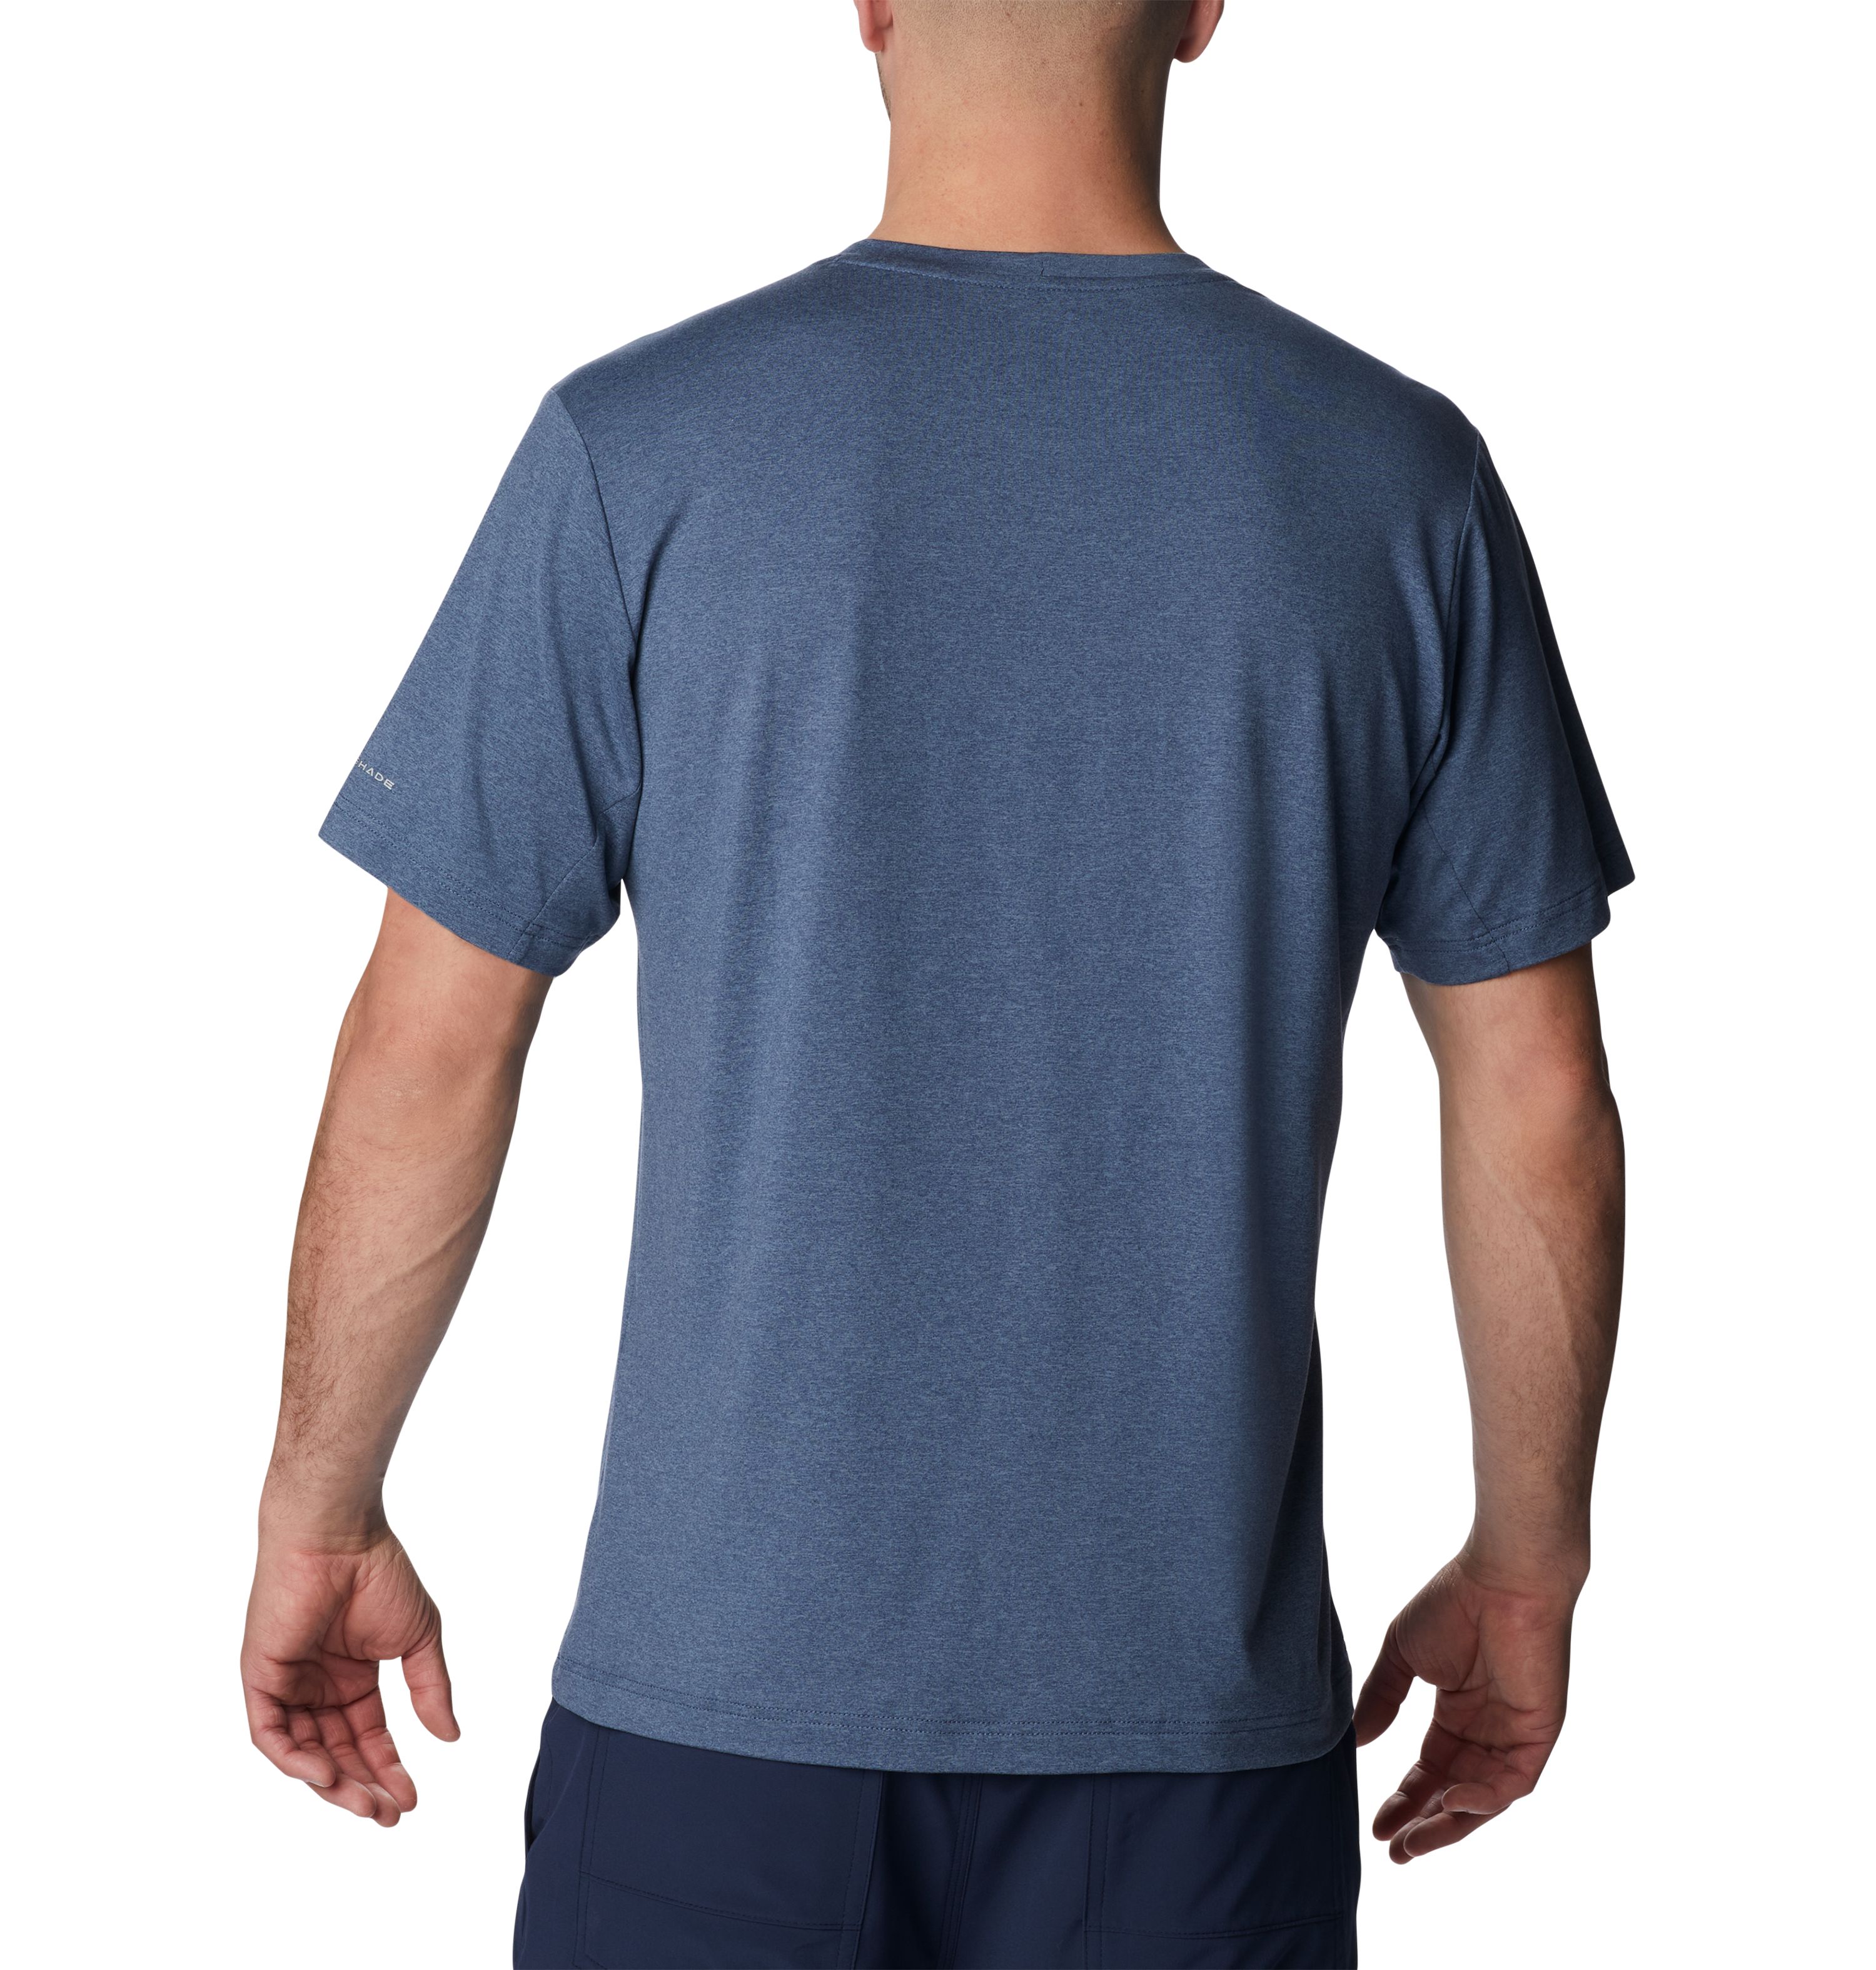 Columbia Tech Trail Crew Neck Erkek Kısa Kollu T-Shirt. 2